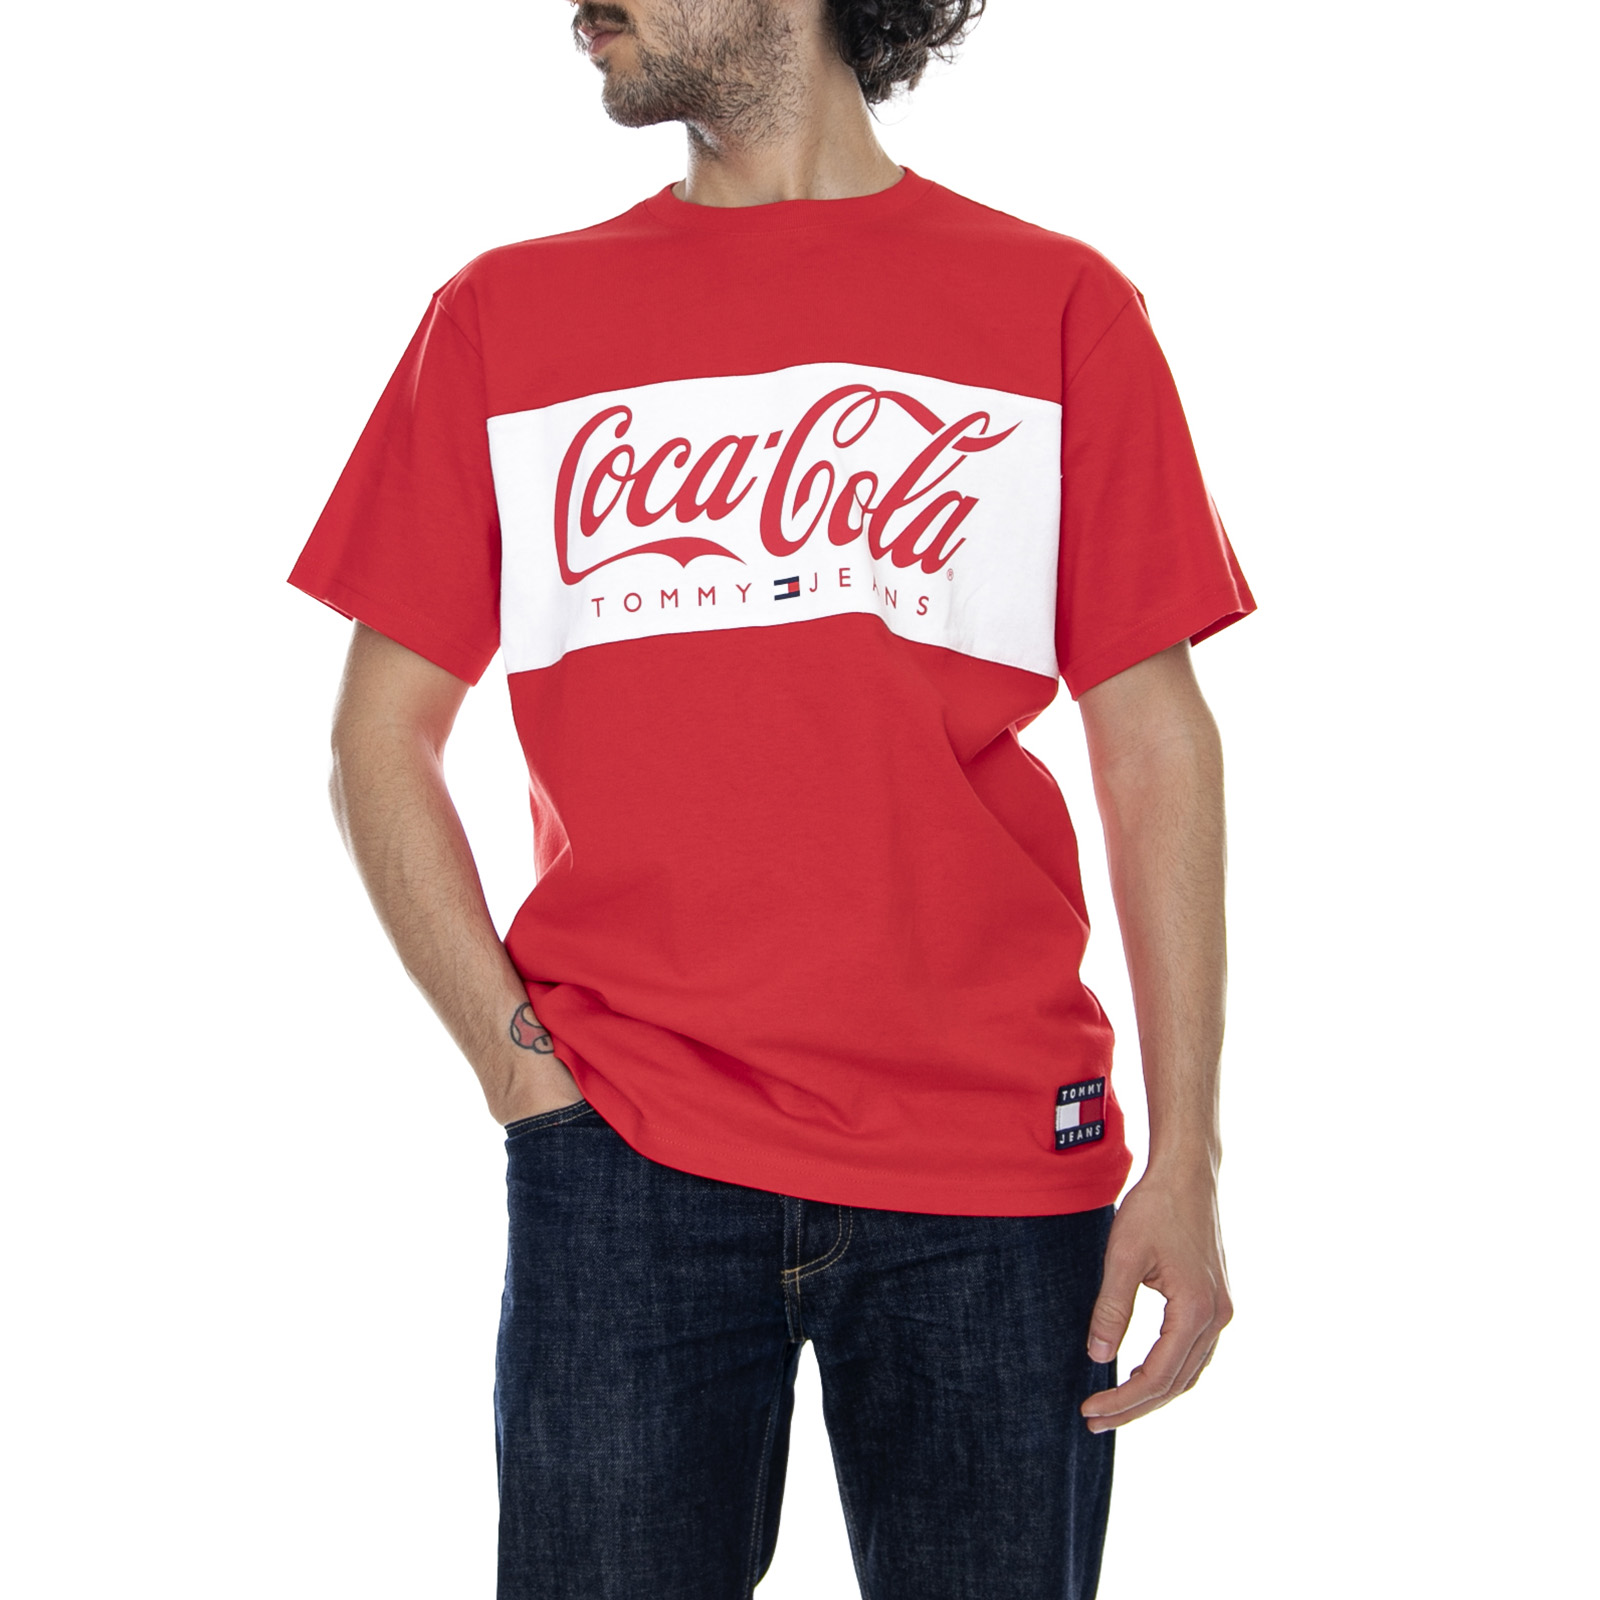 tommy hilfiger x coca cola t shirt